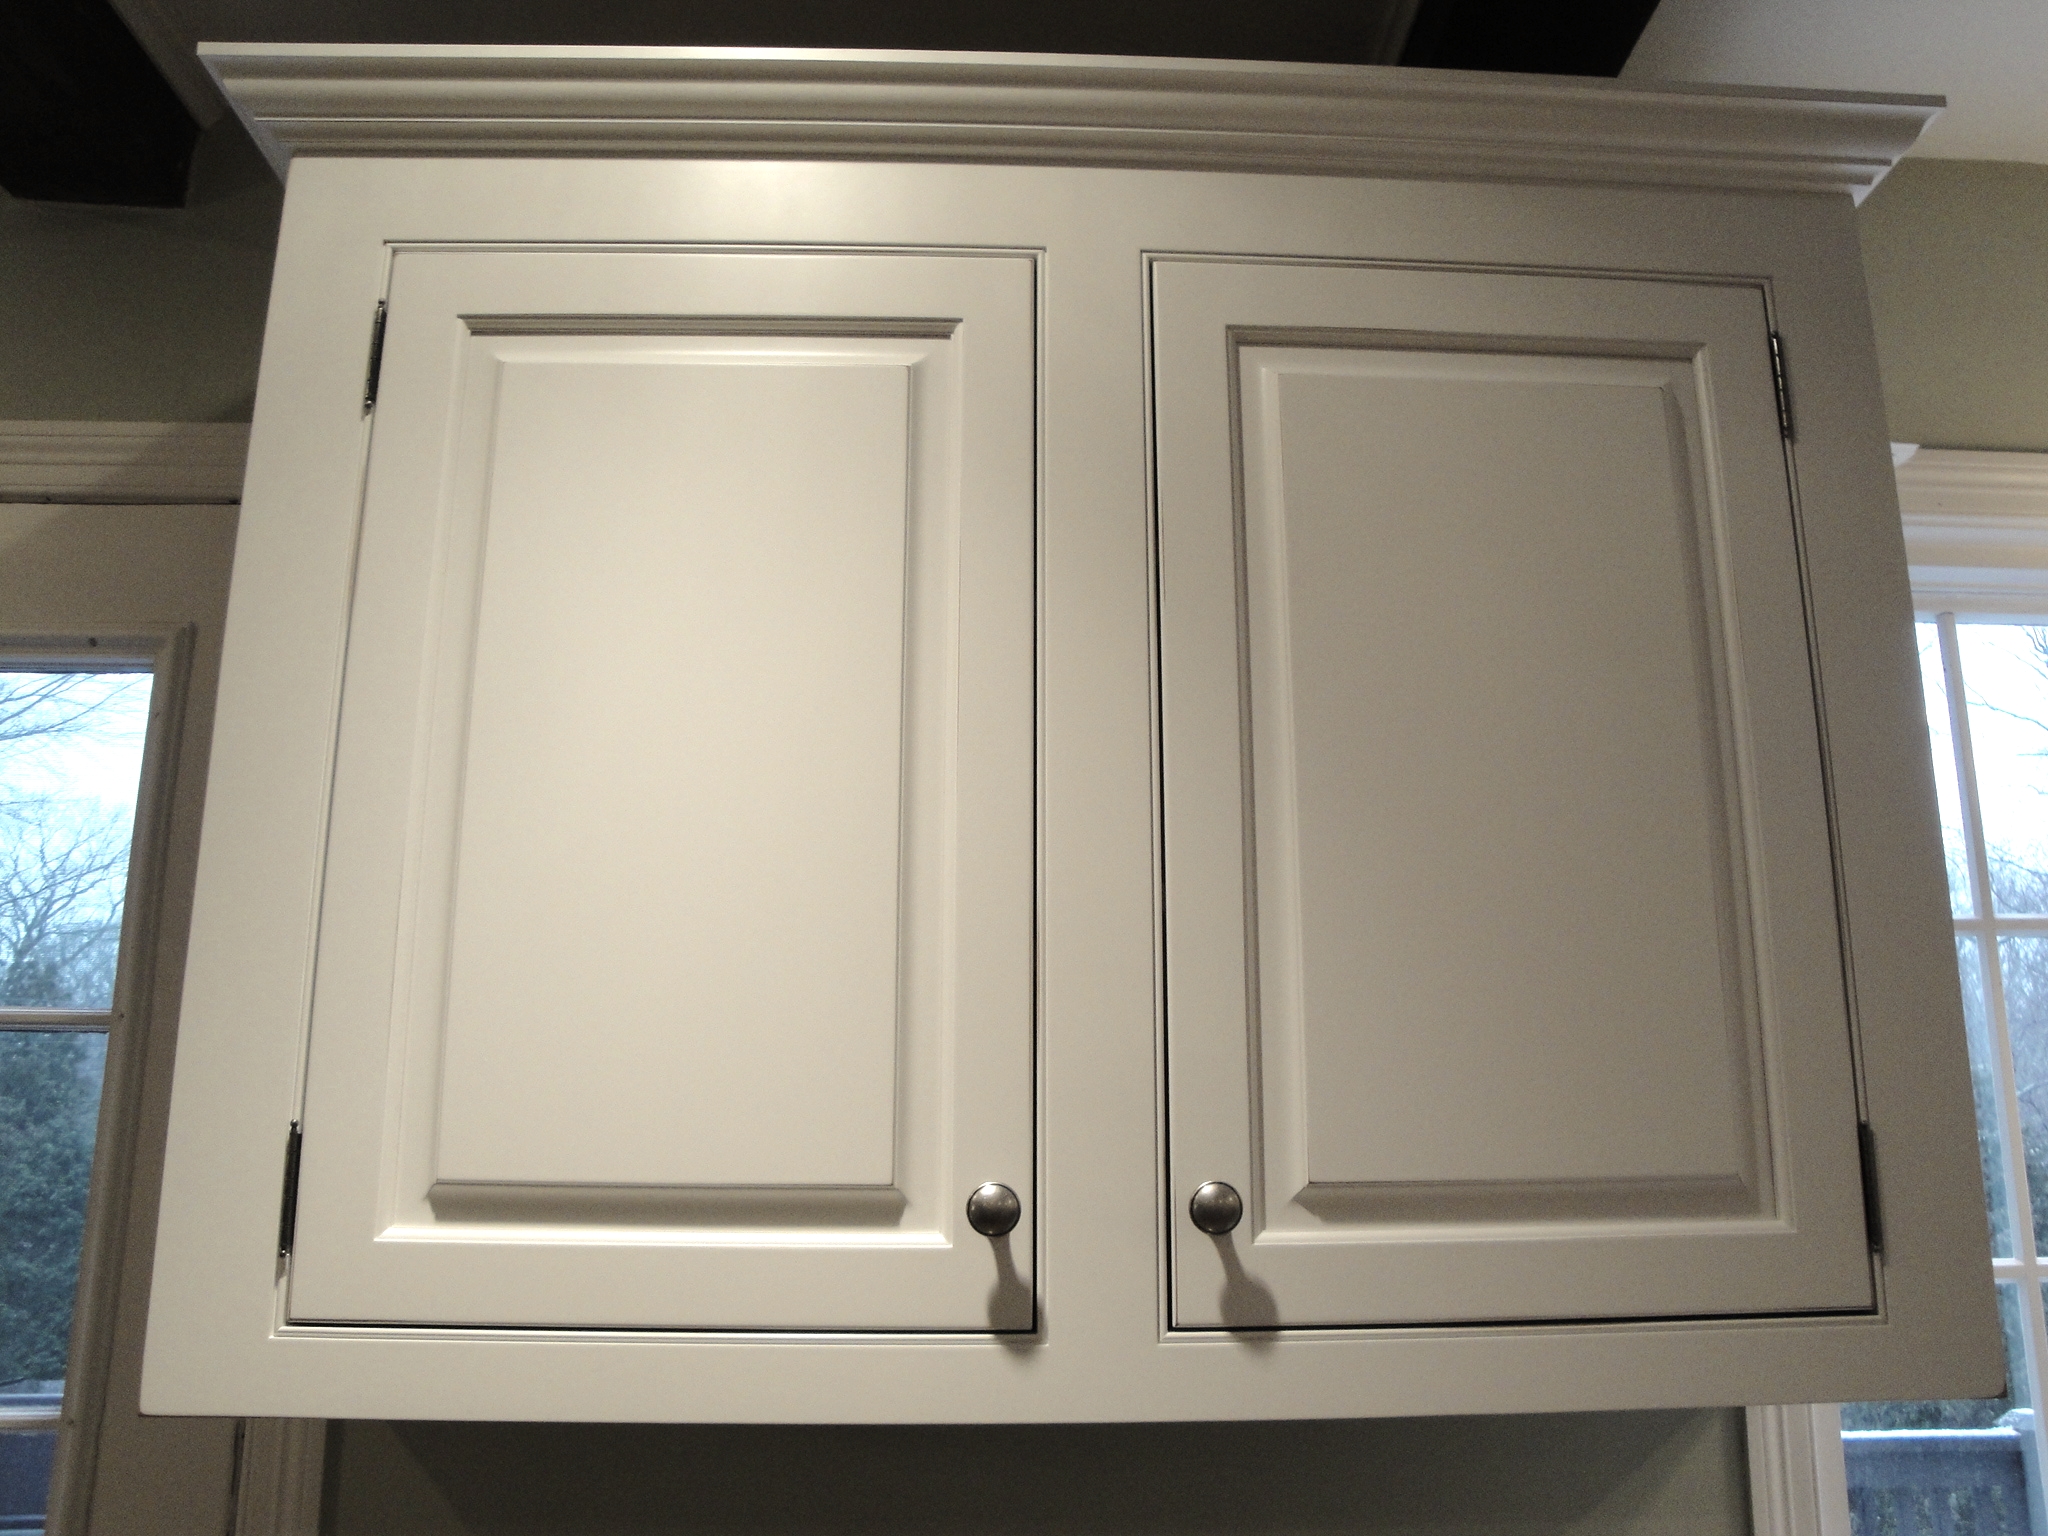 Case Studies Custom Cabinet Remodeling Kitchen Design Ackley